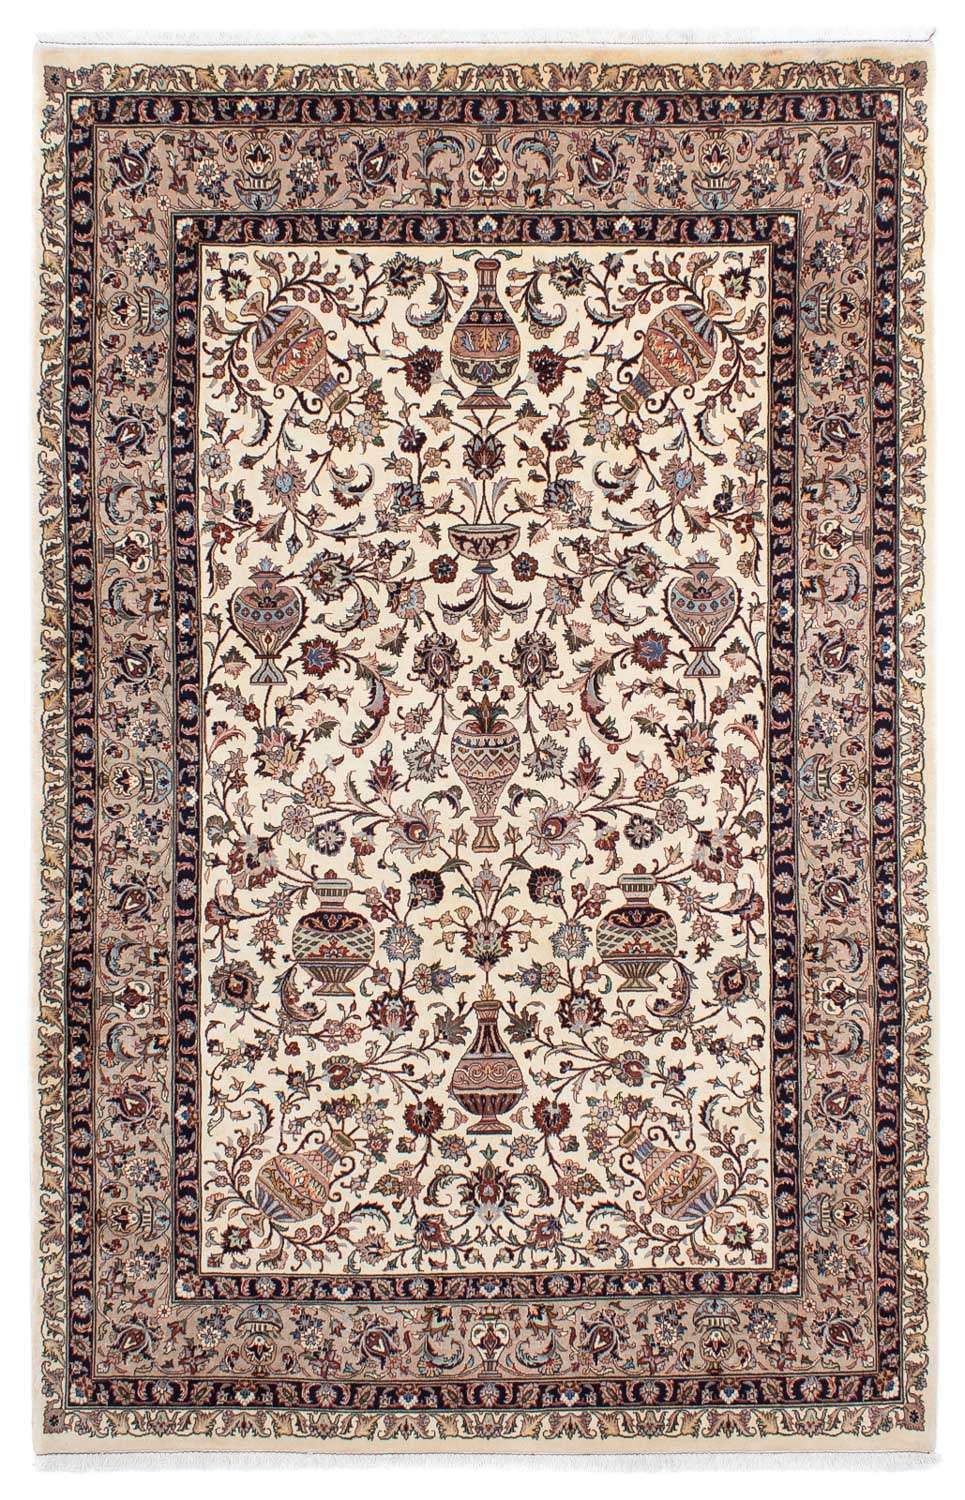 Perský koberec - Klasický - 304 x 201 cm - béžová